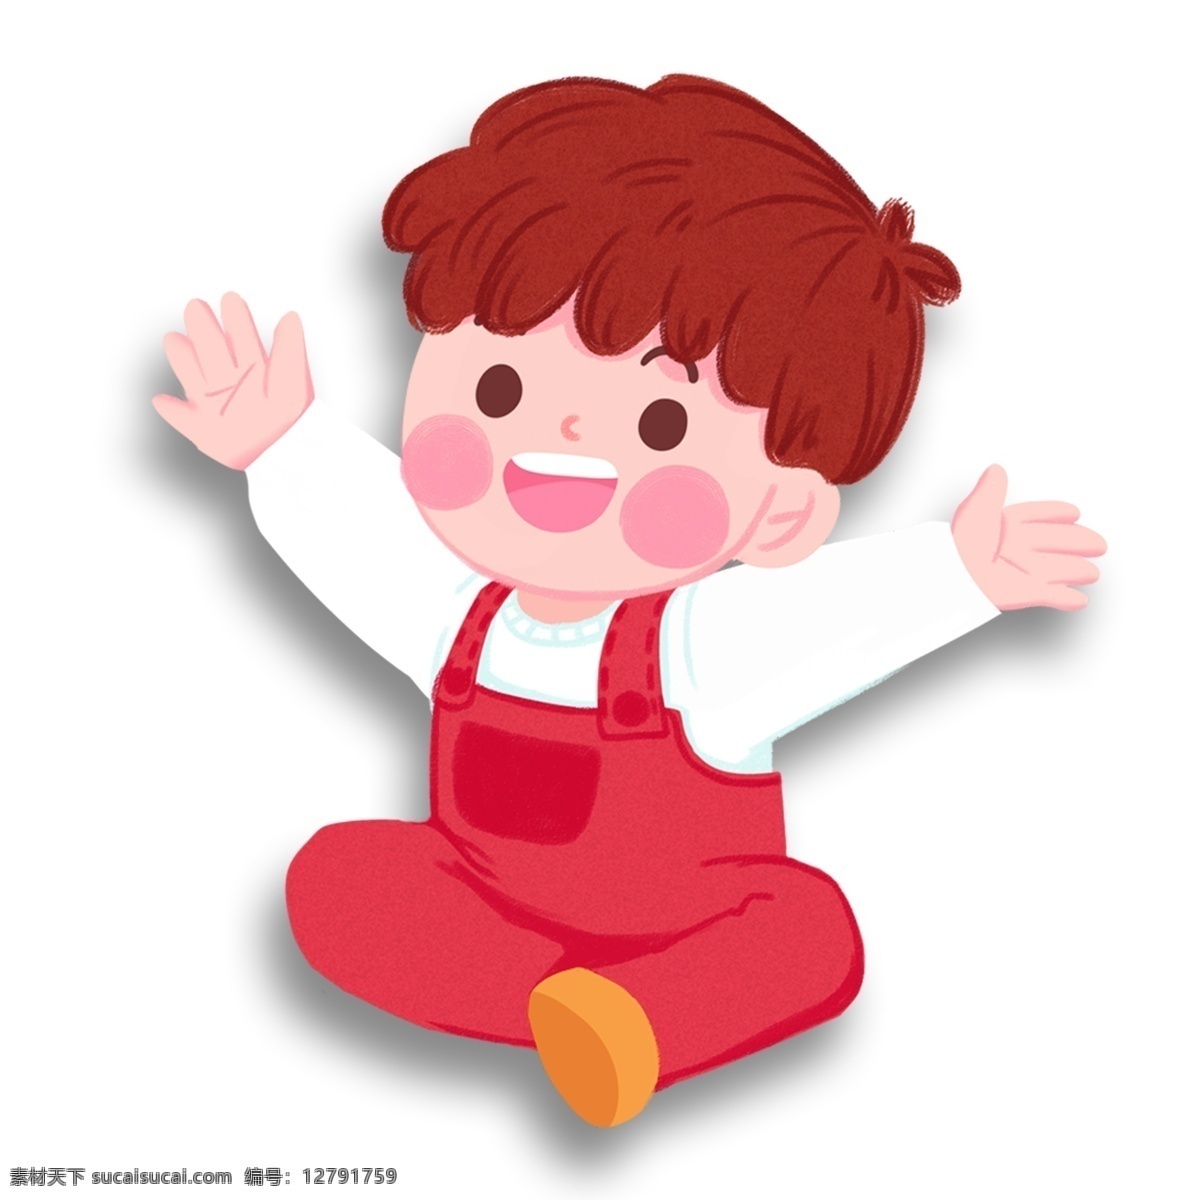 微笑 可爱 孩童 装饰 元素 装饰元素 手绘 红发 孩子 背带裤 腮红